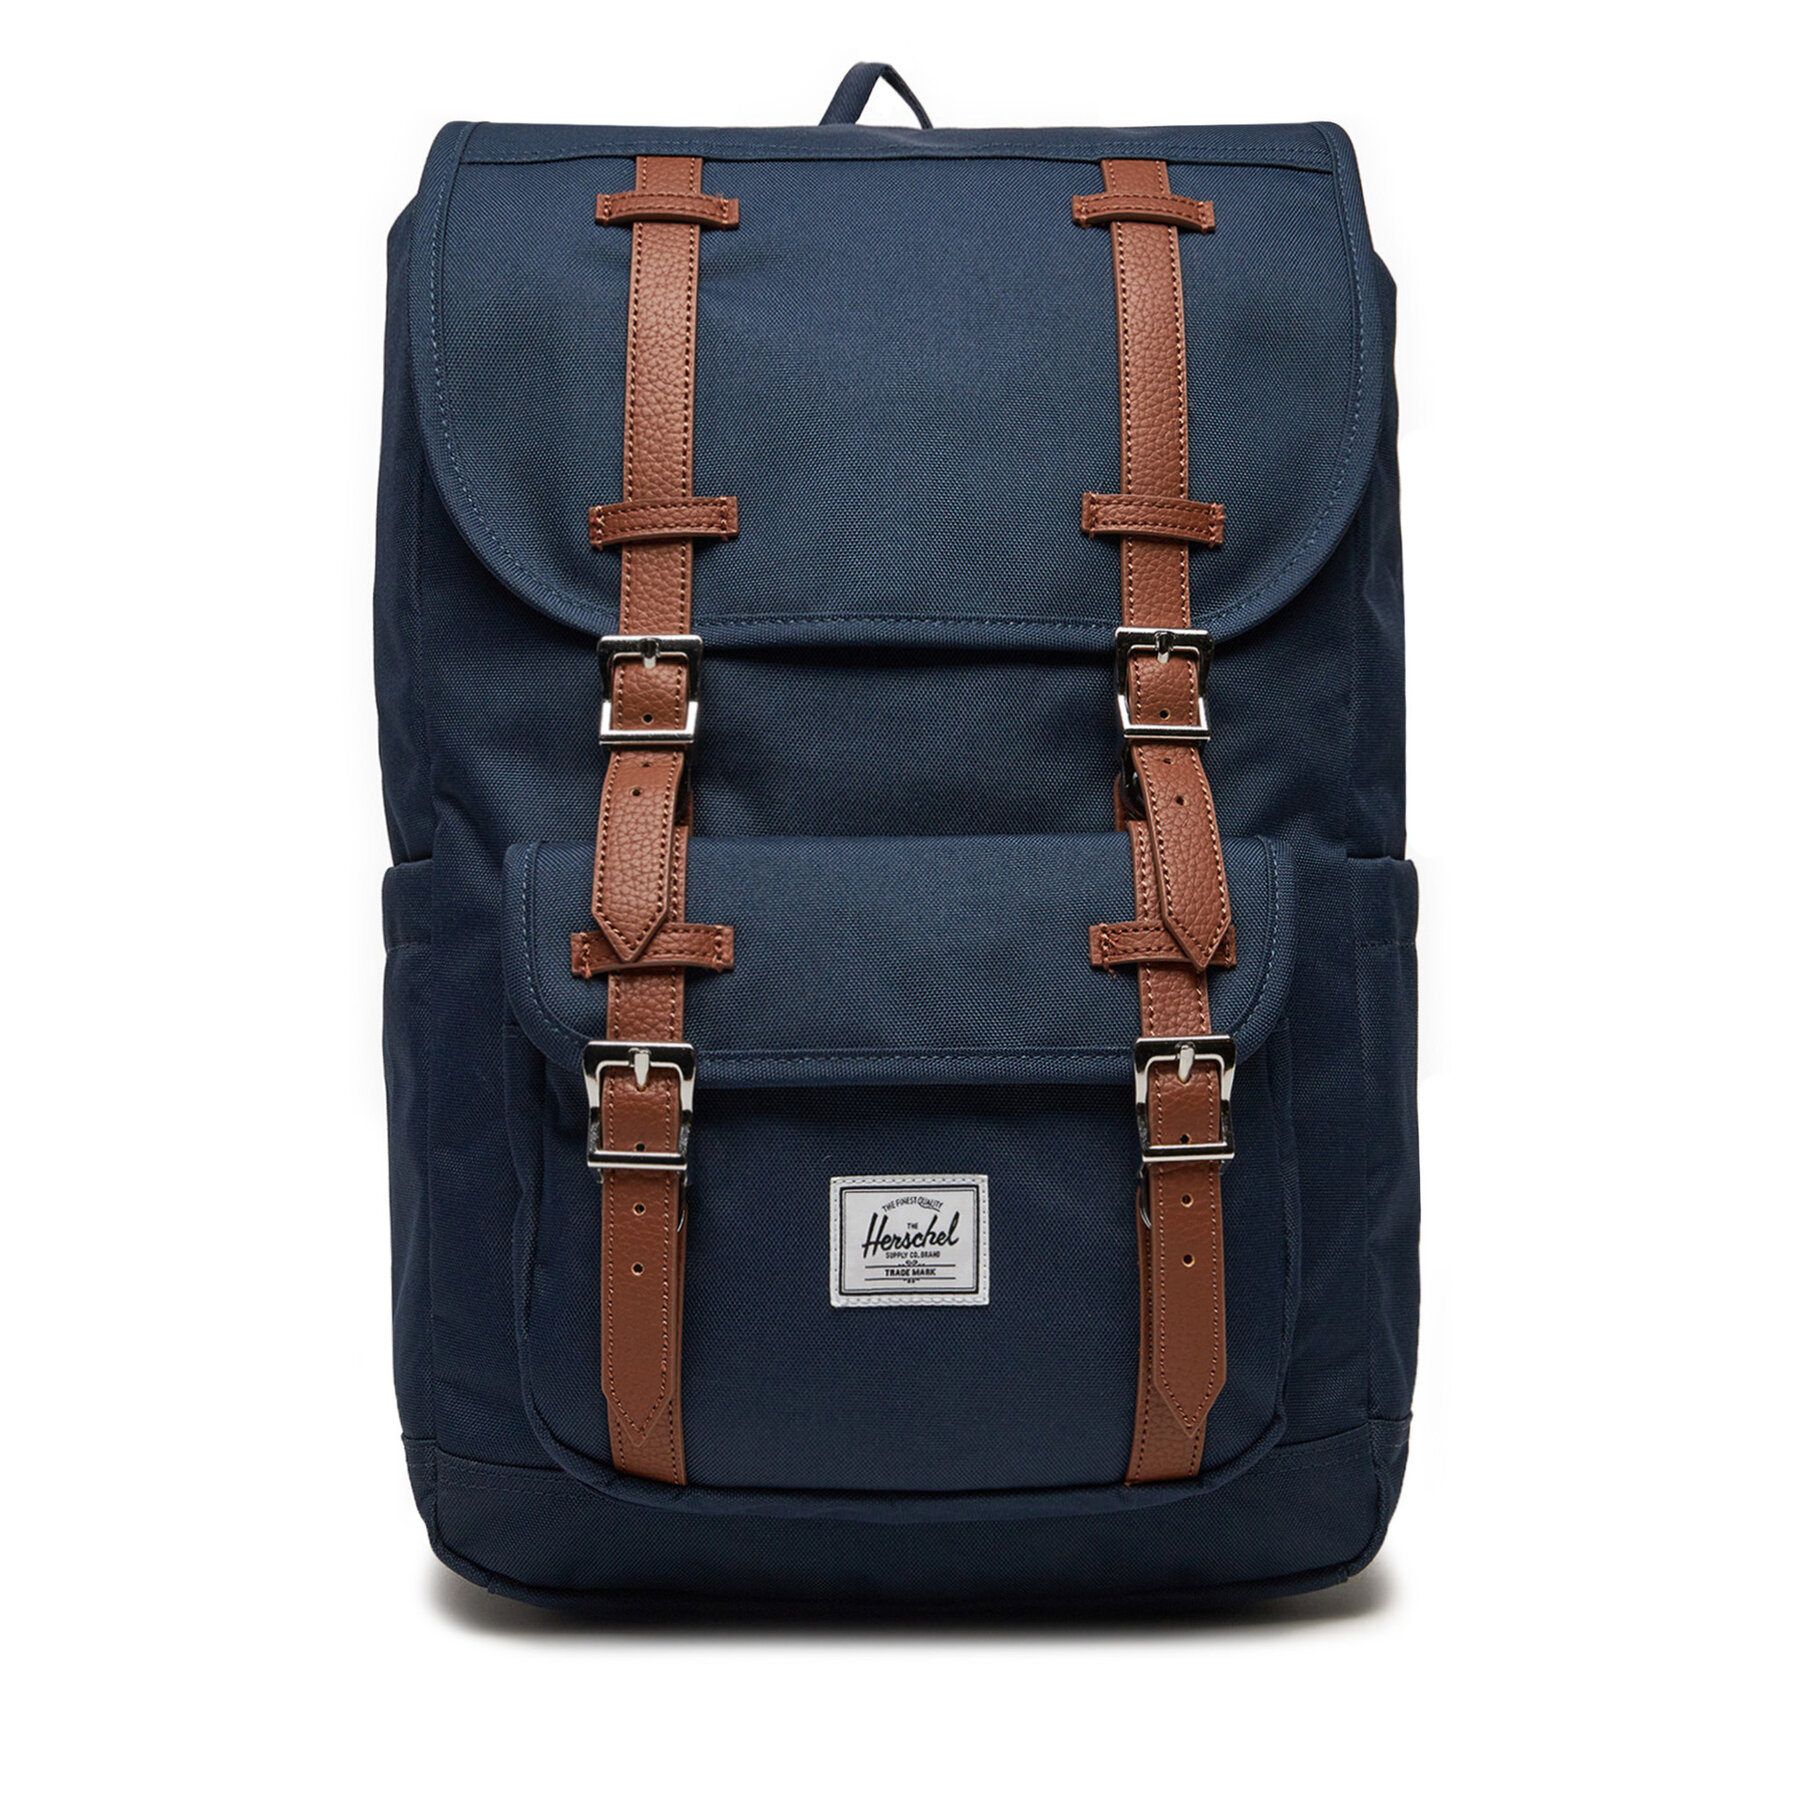 Σακίδιο Herschel Little America™ Mid Backpack 11391-00007 Σκούρο μπλε